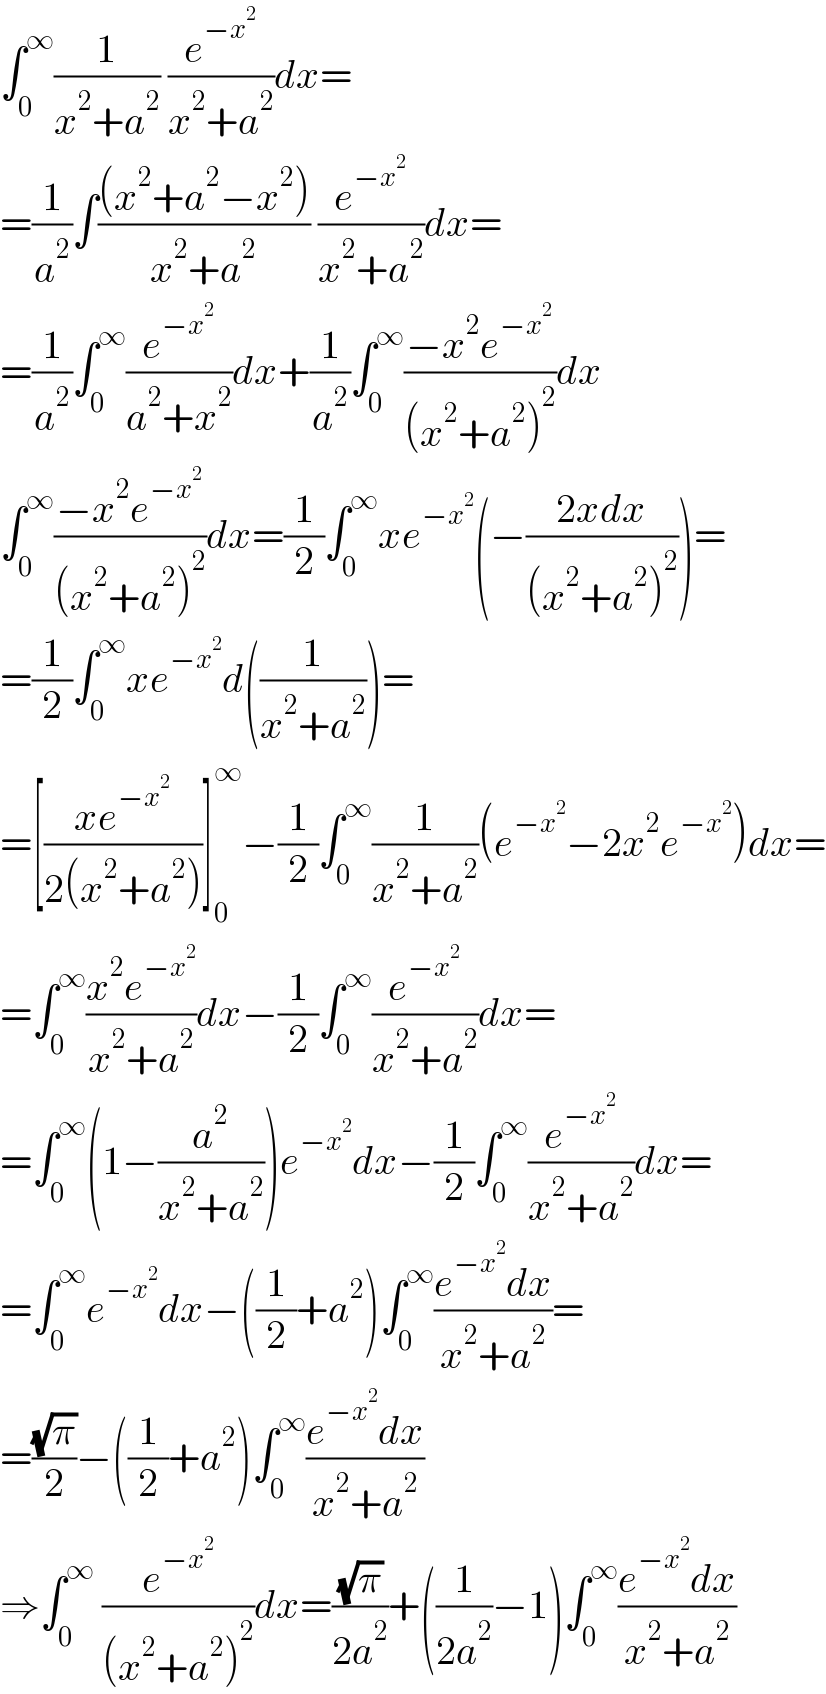 ∫_0 ^∞ (1/(x^2 +a^2 )) (e^(−x^2 ) /(x^2 +a^2 ))dx=  =(1/a^2 )∫(((x^2 +a^2 −x^2 ))/(x^2 +a^2 )) (e^(−x^2 ) /(x^2 +a^2 ))dx=  =(1/a^2 )∫_0 ^∞ (e^(−x^2 ) /(a^2 +x^2 ))dx+(1/a^2 )∫_0 ^∞ ((−x^2 e^(−x^2 ) )/((x^2 +a^2 )^2 ))dx  ∫_0 ^∞ ((−x^2 e^(−x^2 ) )/((x^2 +a^2 )^2 ))dx=(1/2)∫_0 ^∞ xe^(−x^2 ) (−((2xdx)/((x^2 +a^2 )^2 )))=  =(1/2)∫_0 ^∞ xe^(−x^2 ) d((1/(x^2 +a^2 )))=  =[((xe^(−x^2 ) )/(2(x^2 +a^2 )))]_0 ^∞ −(1/2)∫_0 ^∞ (1/(x^2 +a^2 ))(e^(−x^2 ) −2x^2 e^(−x^2 ) )dx=  =∫_0 ^∞ ((x^2 e^(−x^2 ) )/(x^2 +a^2 ))dx−(1/2)∫_0 ^∞ (e^(−x^2 ) /(x^2 +a^2 ))dx=  =∫_0 ^∞ (1−(a^2 /(x^2 +a^2 )))e^(−x^2 ) dx−(1/2)∫_0 ^∞ (e^(−x^2 ) /(x^2 +a^2 ))dx=  =∫_0 ^∞ e^(−x^2 ) dx−((1/2)+a^2 )∫_0 ^∞ ((e^(−x^2 ) dx)/(x^2 +a^2 ))=  =((√π)/2)−((1/2)+a^2 )∫_0 ^∞ ((e^(−x^2 ) dx)/(x^2 +a^2 ))  ⇒∫_0 ^∞  (e^(−x^2 ) /((x^2 +a^2 )^2 ))dx=((√π)/(2a^2 ))+((1/(2a^2 ))−1)∫_0 ^∞ ((e^(−x^2 ) dx)/(x^2 +a^2 ))  